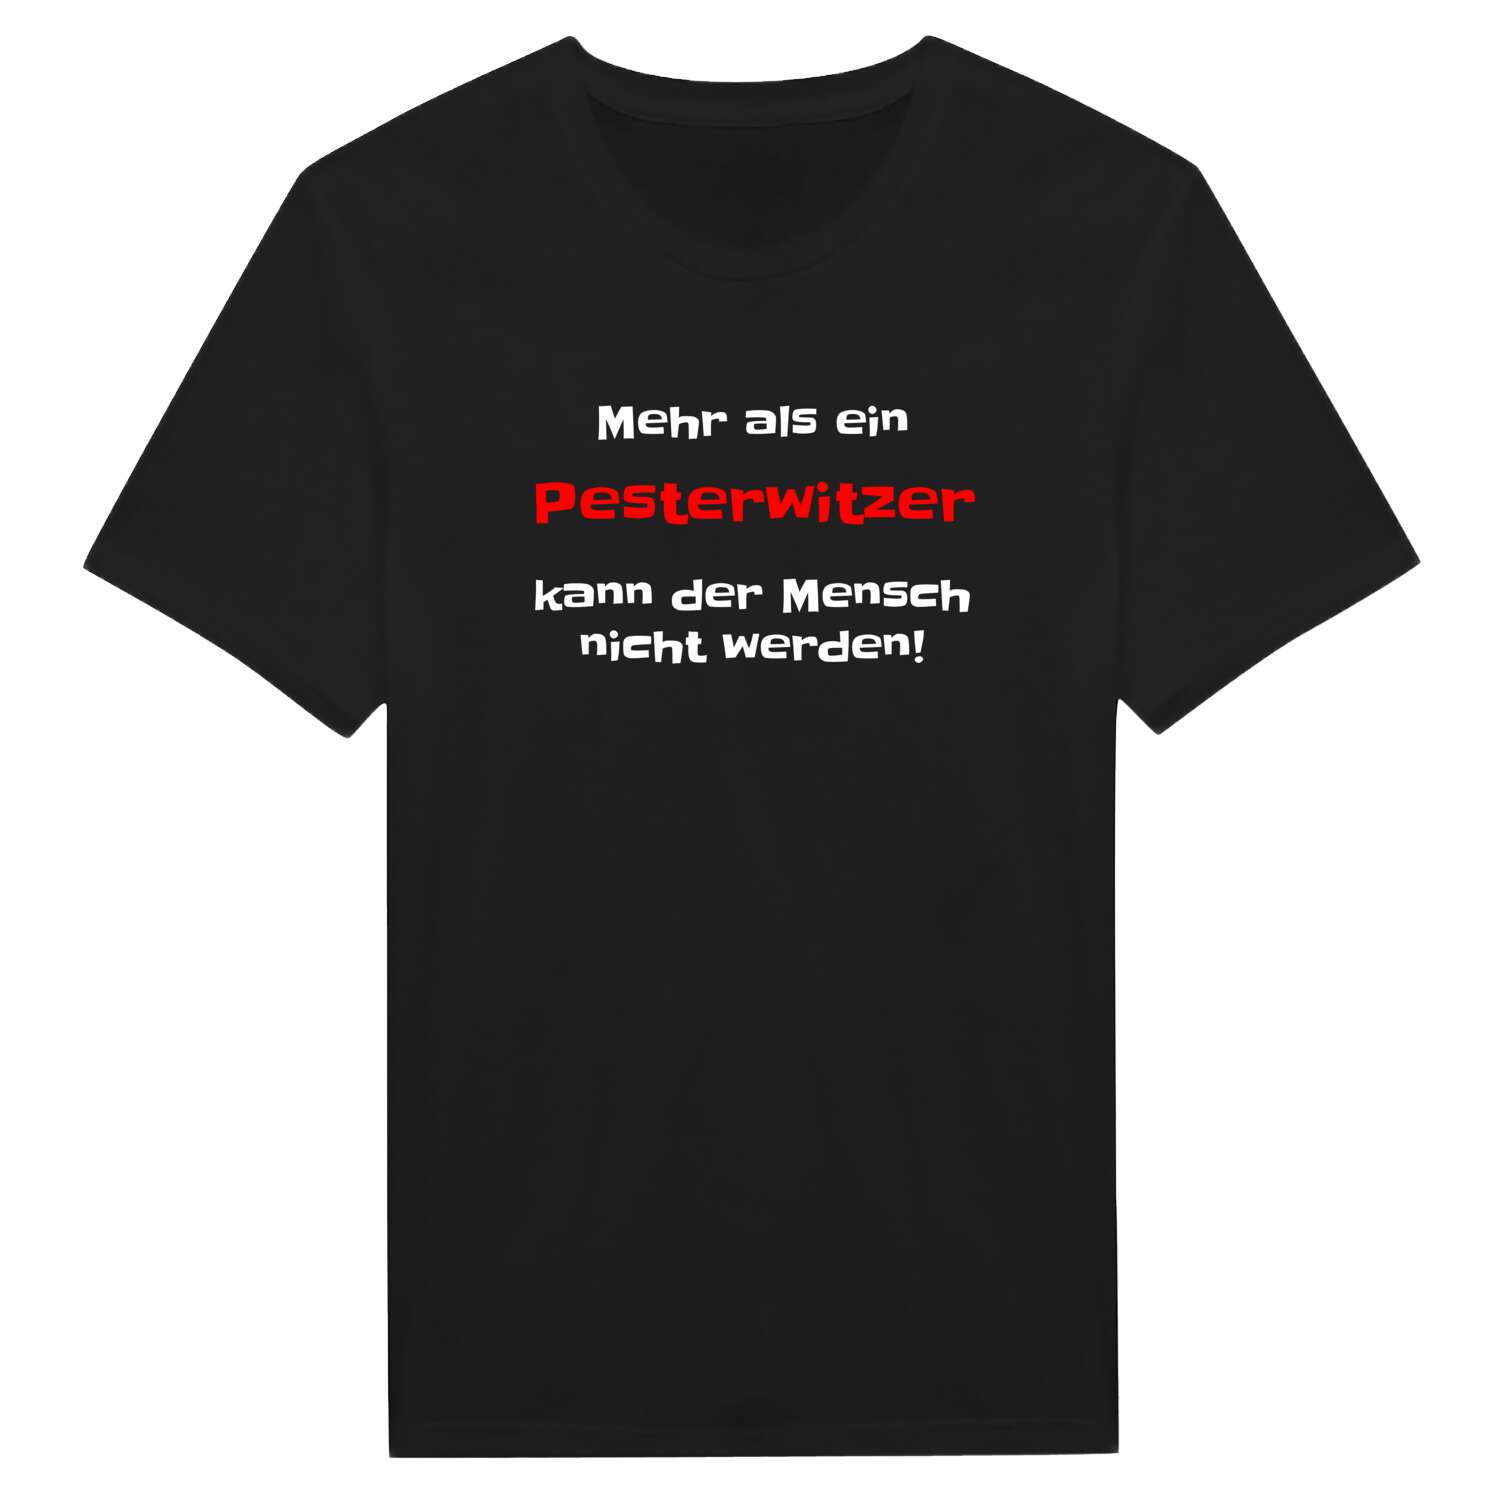 Pesterwitz T-Shirt »Mehr als ein«